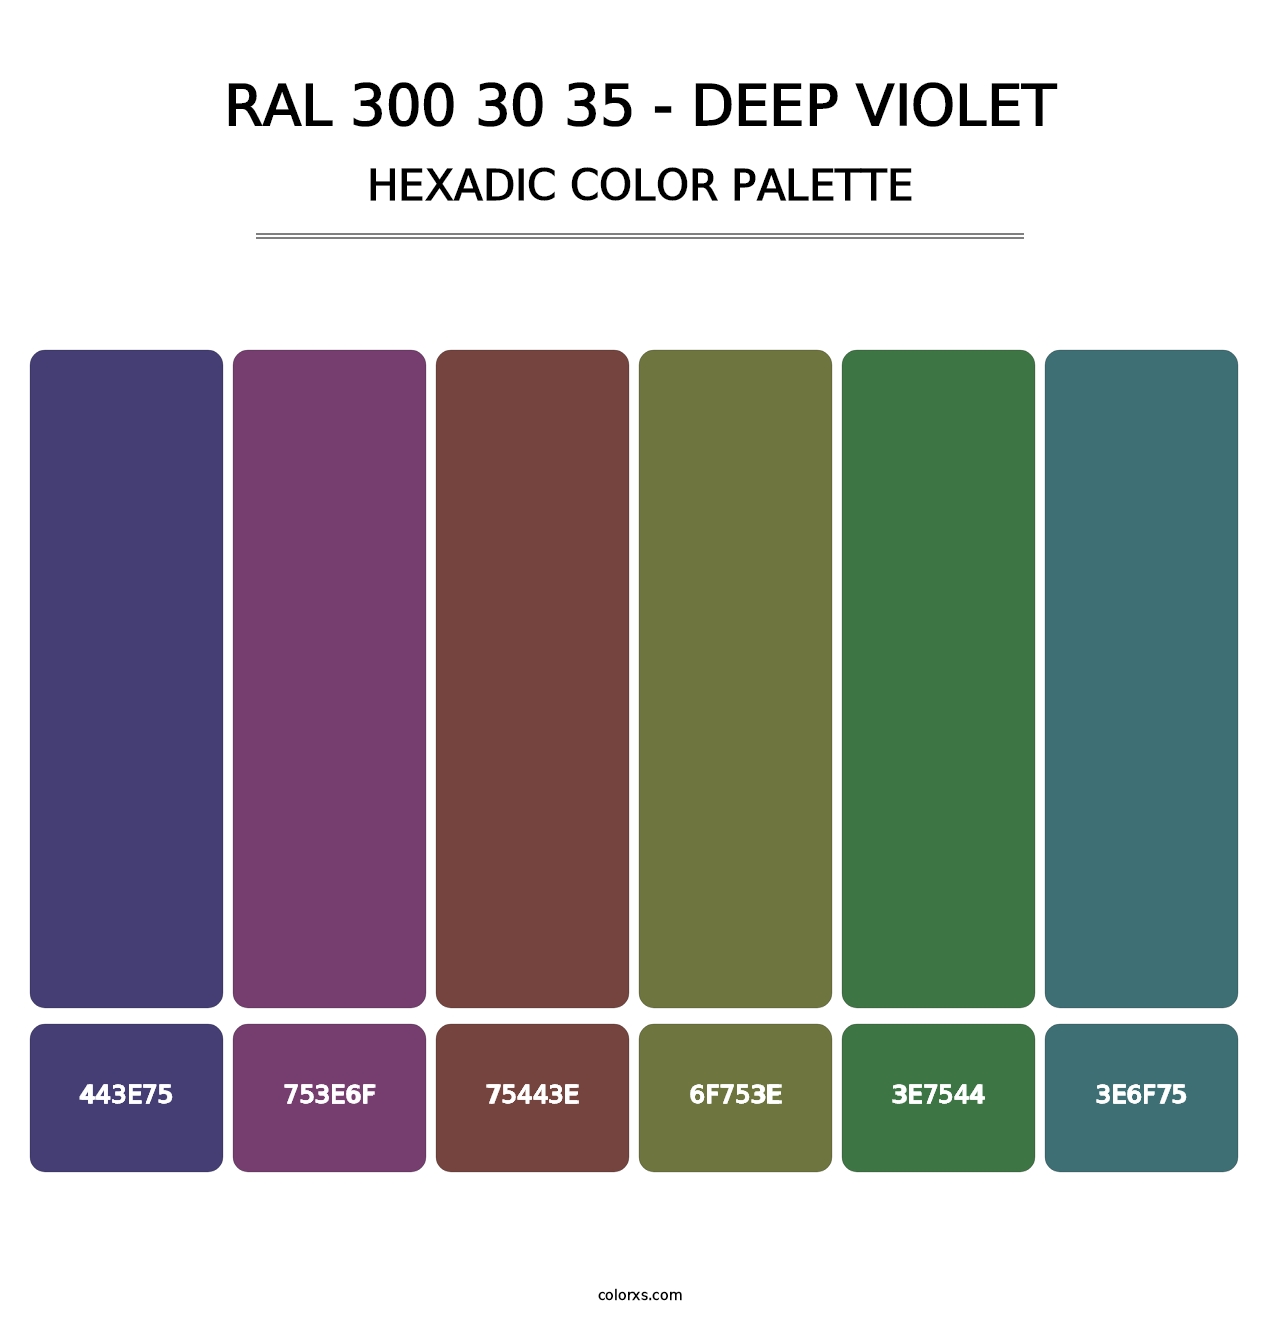 RAL 300 30 35 - Deep Violet - Hexadic Color Palette